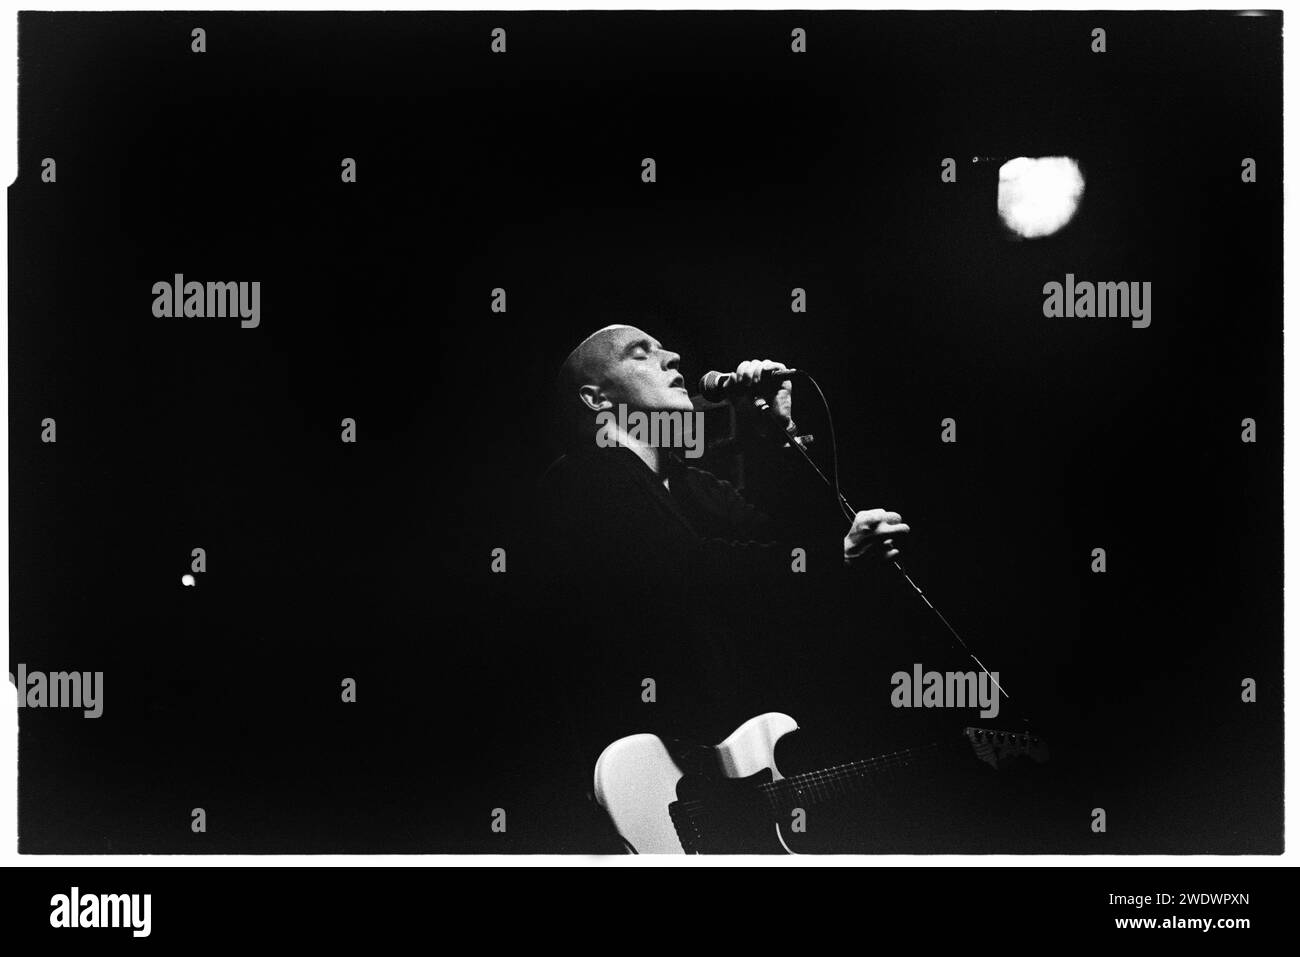 Le chanteur SICE du groupe The Boo Radleys sur la scène NME au Glastonbury Festival, Pilton, Angleterre, le 24 juin 1995. Photo : ROB WATKINS. INFO : The Boo Radleys, un groupe de rock alternatif britannique formé à la fin des années 80, mêle shoegaze et Dream pop. Avec des hits comme « Wake Up Boo! » Et des albums comme "Giant Steps", ils ont laissé une marque indélébile sur la scène musicale alternative des années 90 et Britpop. Banque D'Images